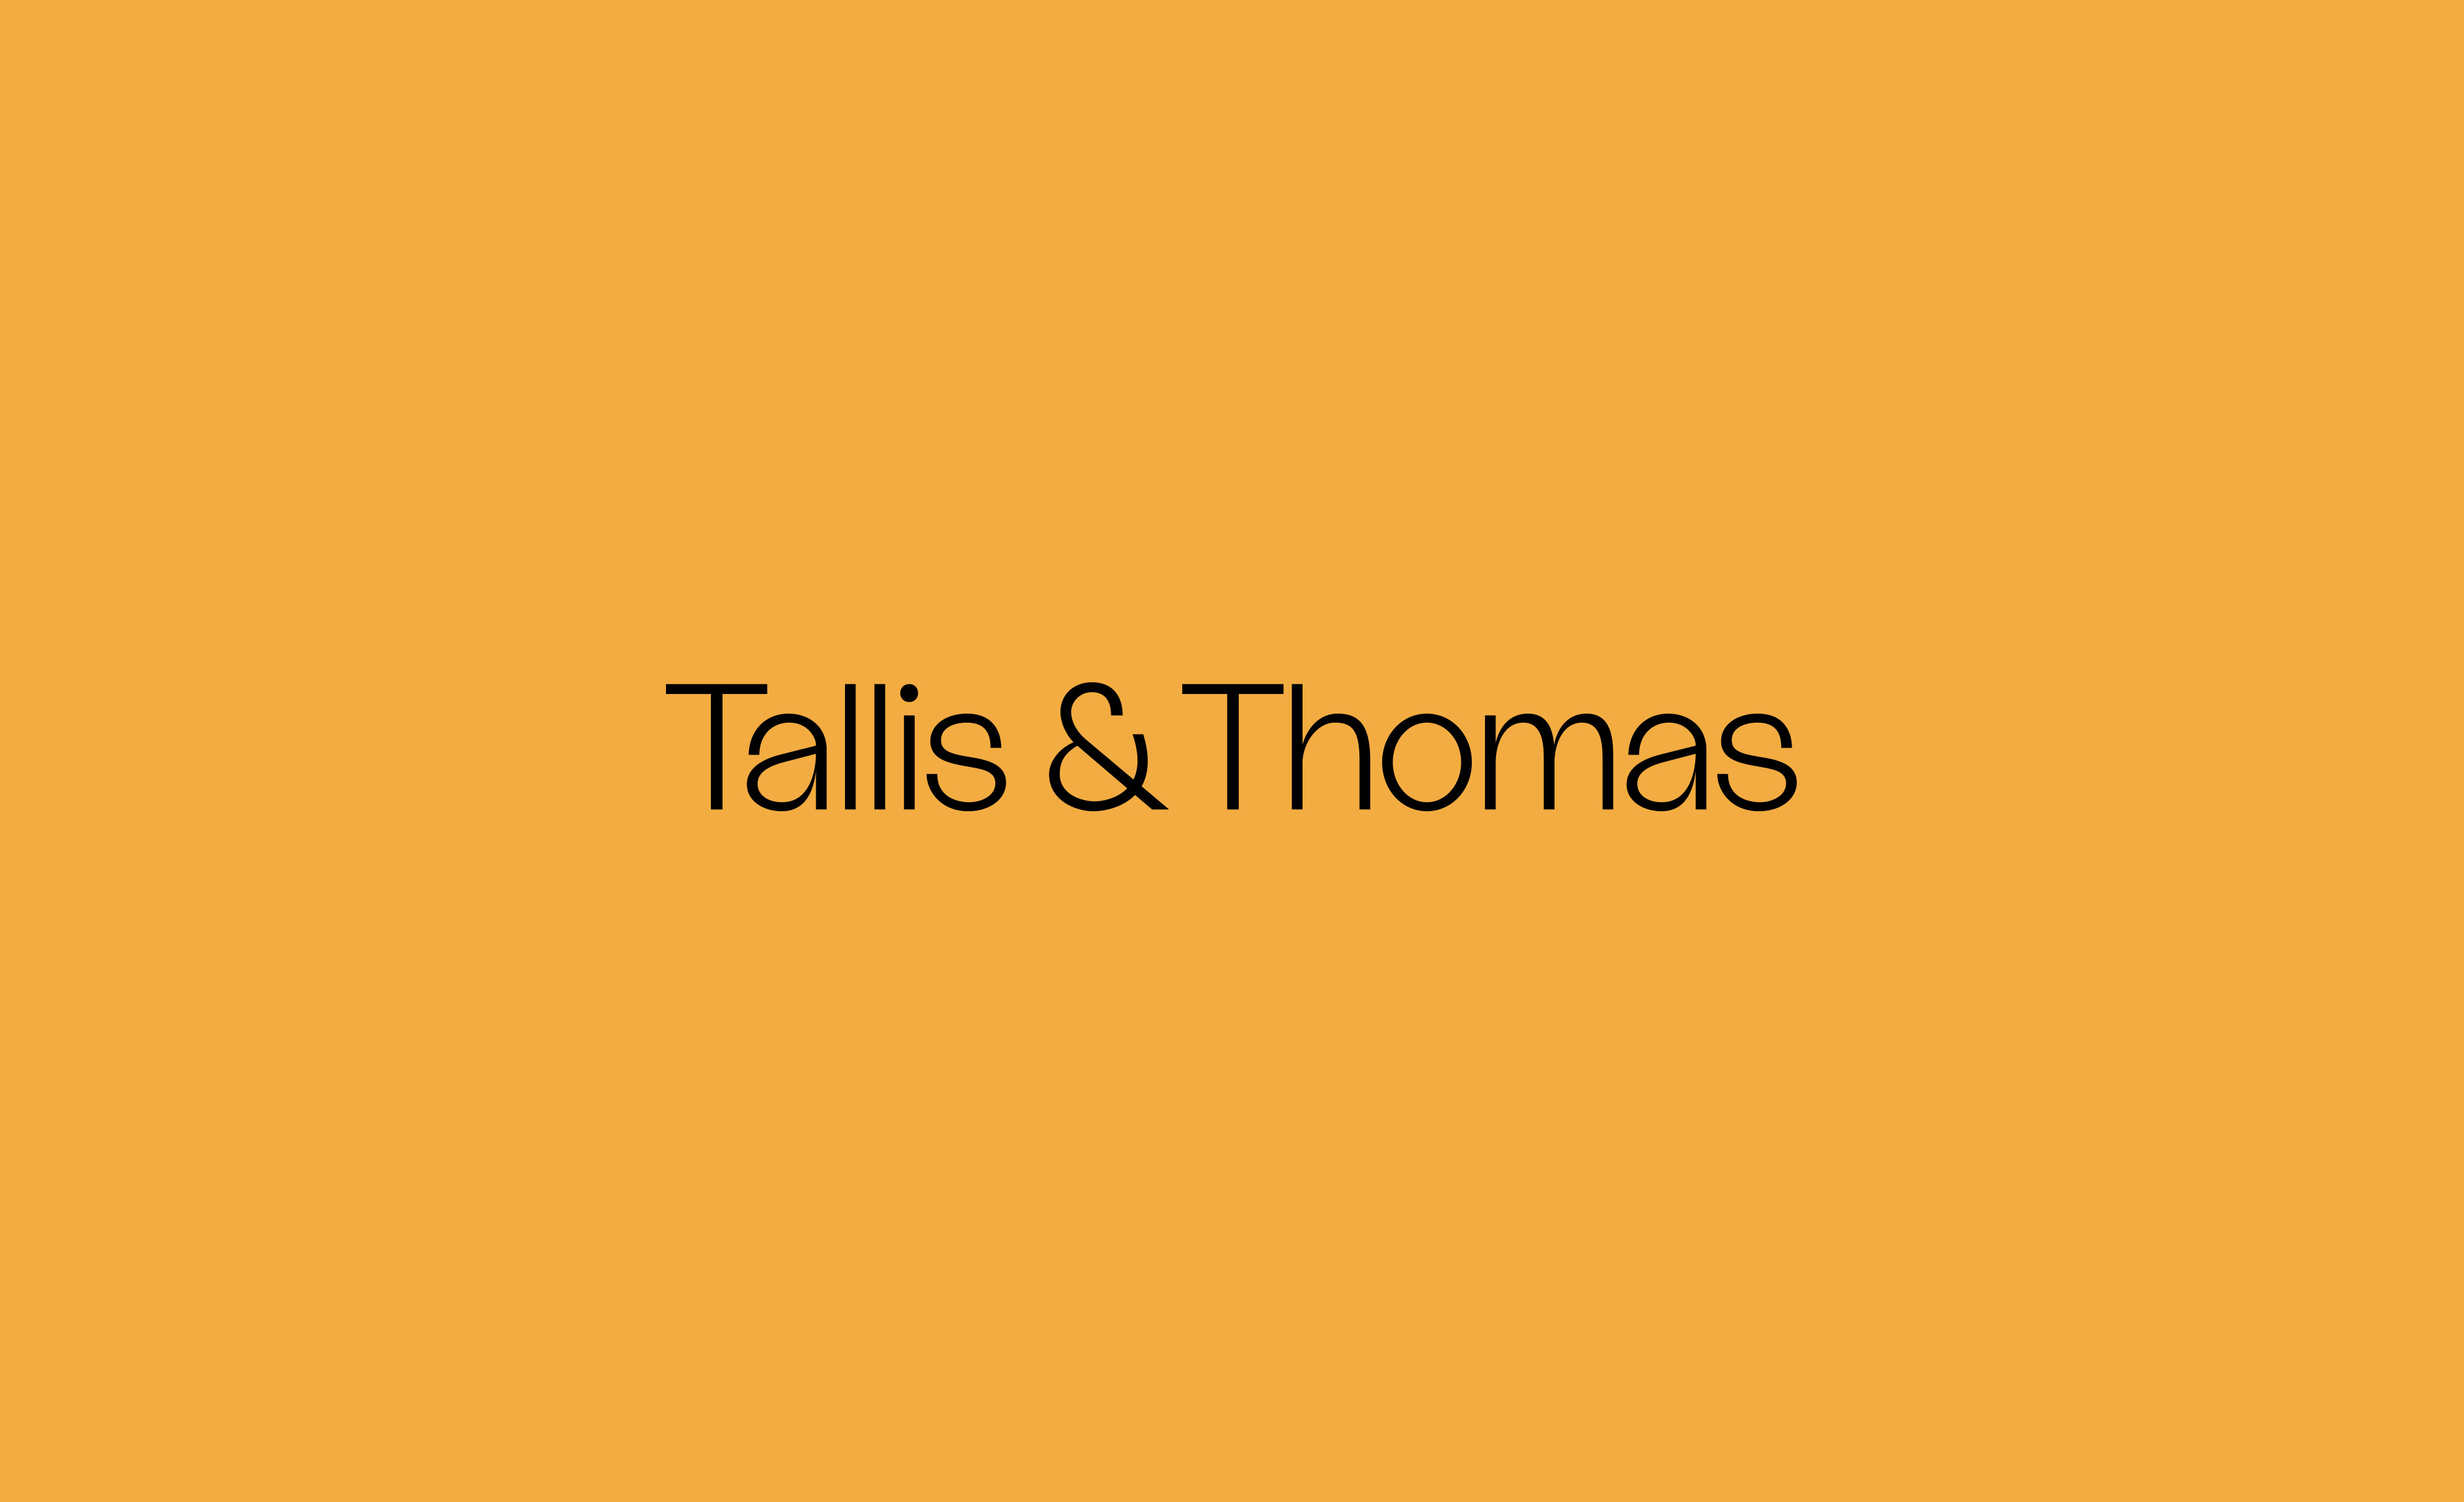 Tallis & Thomas wordmark logo against yellow brand colour